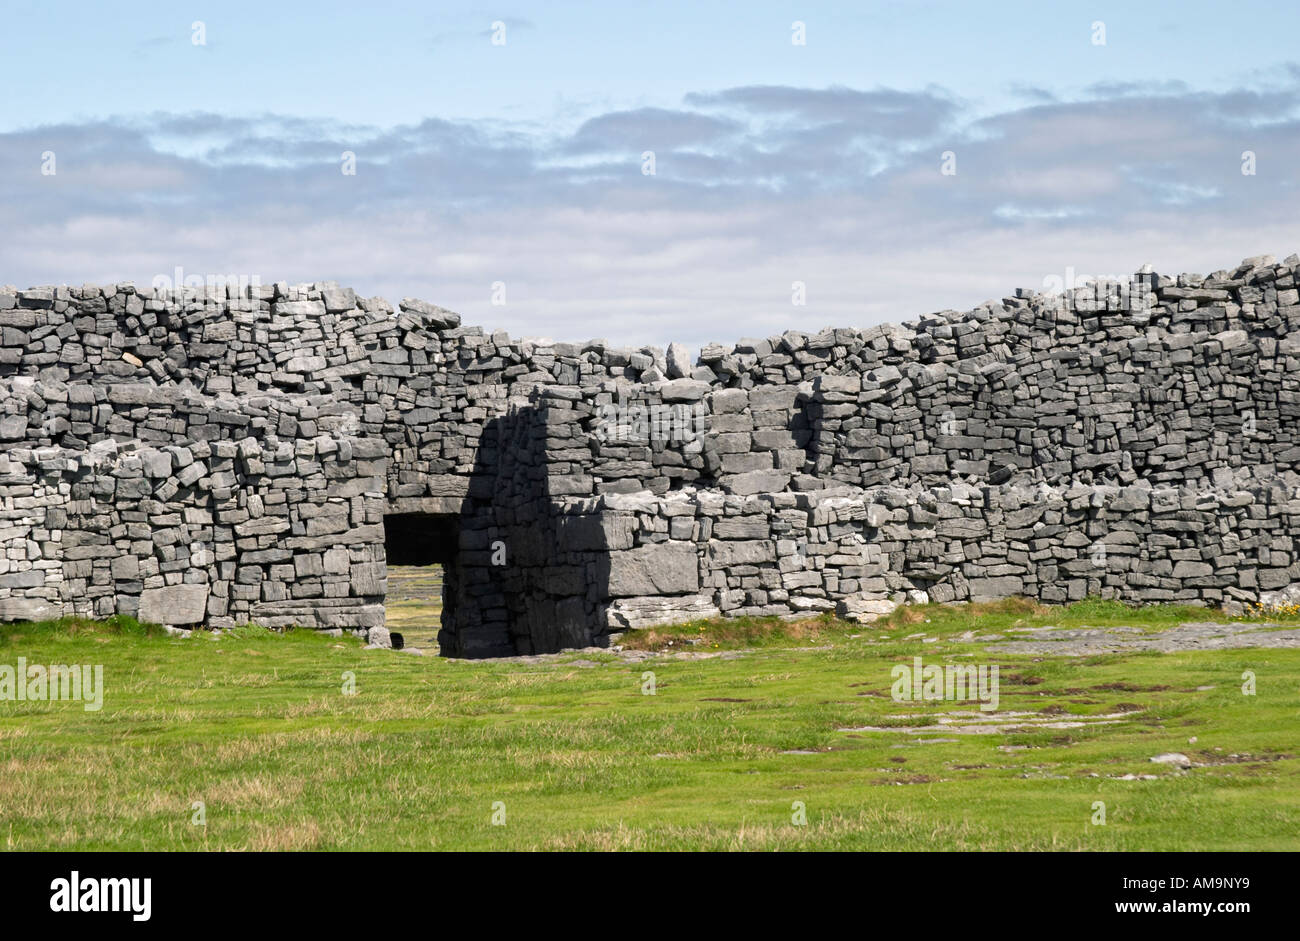 Dun Aonghasa Aran islands Ireland Stock Photo